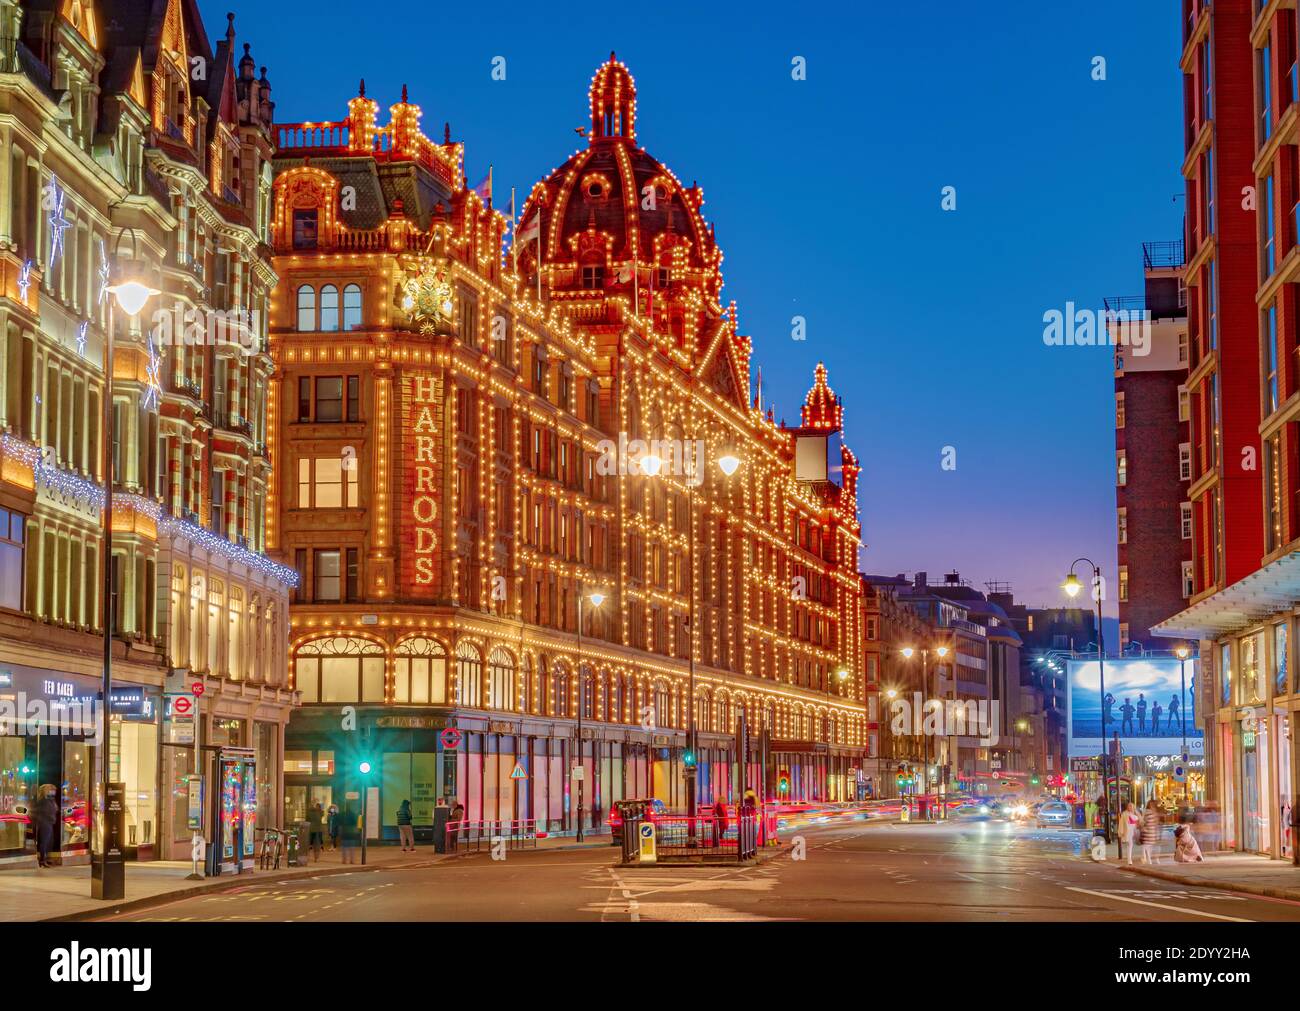 Londra, Inghilterra, Regno Unito - 27 dicembre 2020: Il famoso grande magazzino di lusso Harrods a Londra illuminato in luci di Natale Foto Stock